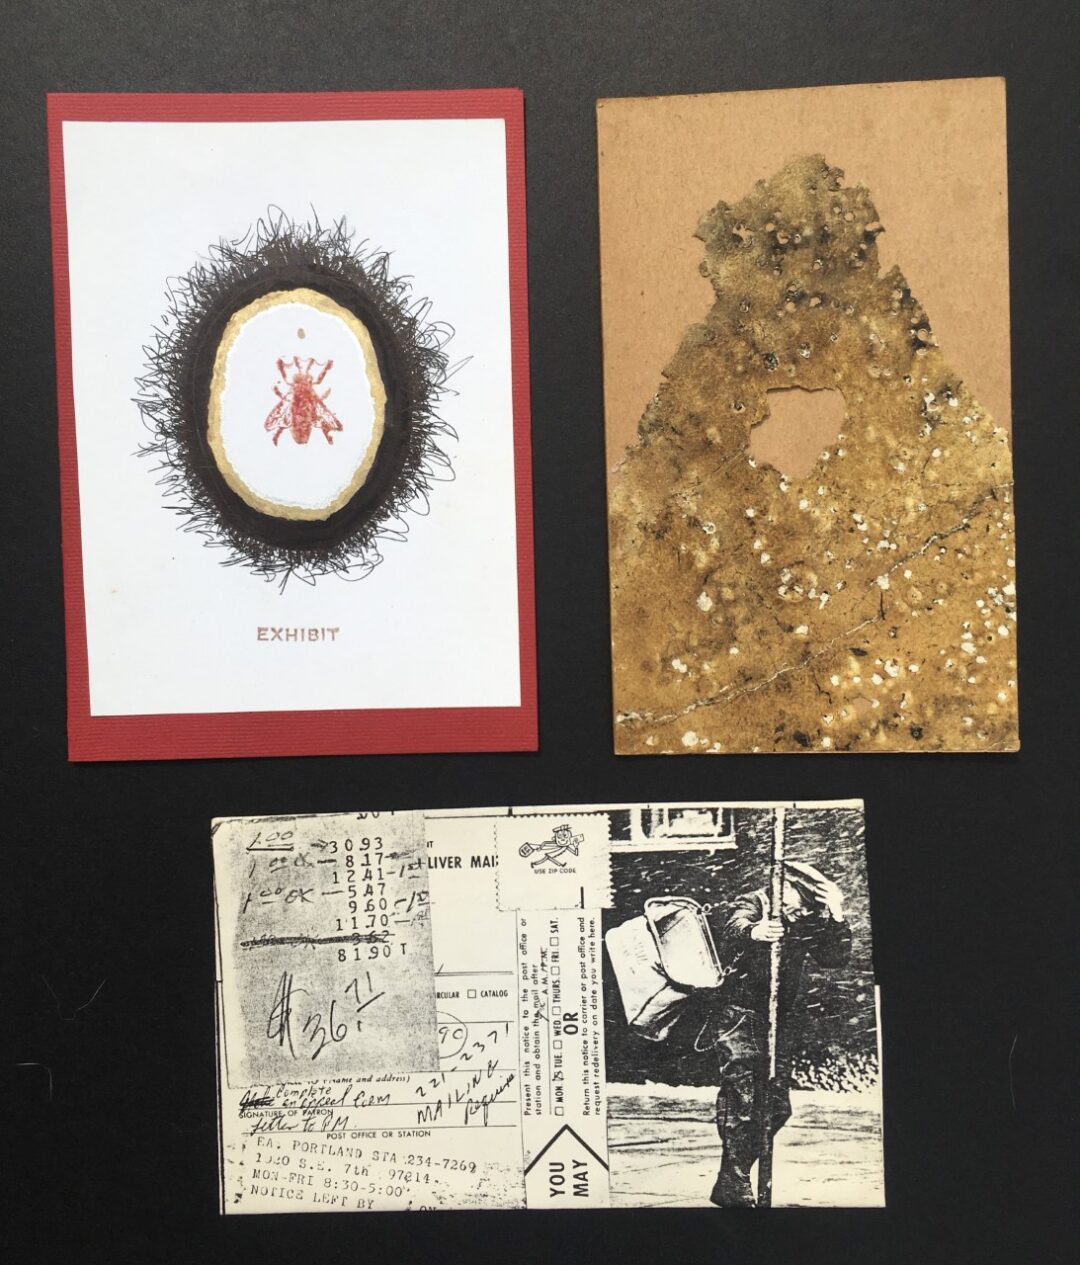 John Marron “Envelopener Multi Media” art show postcards, $300.00